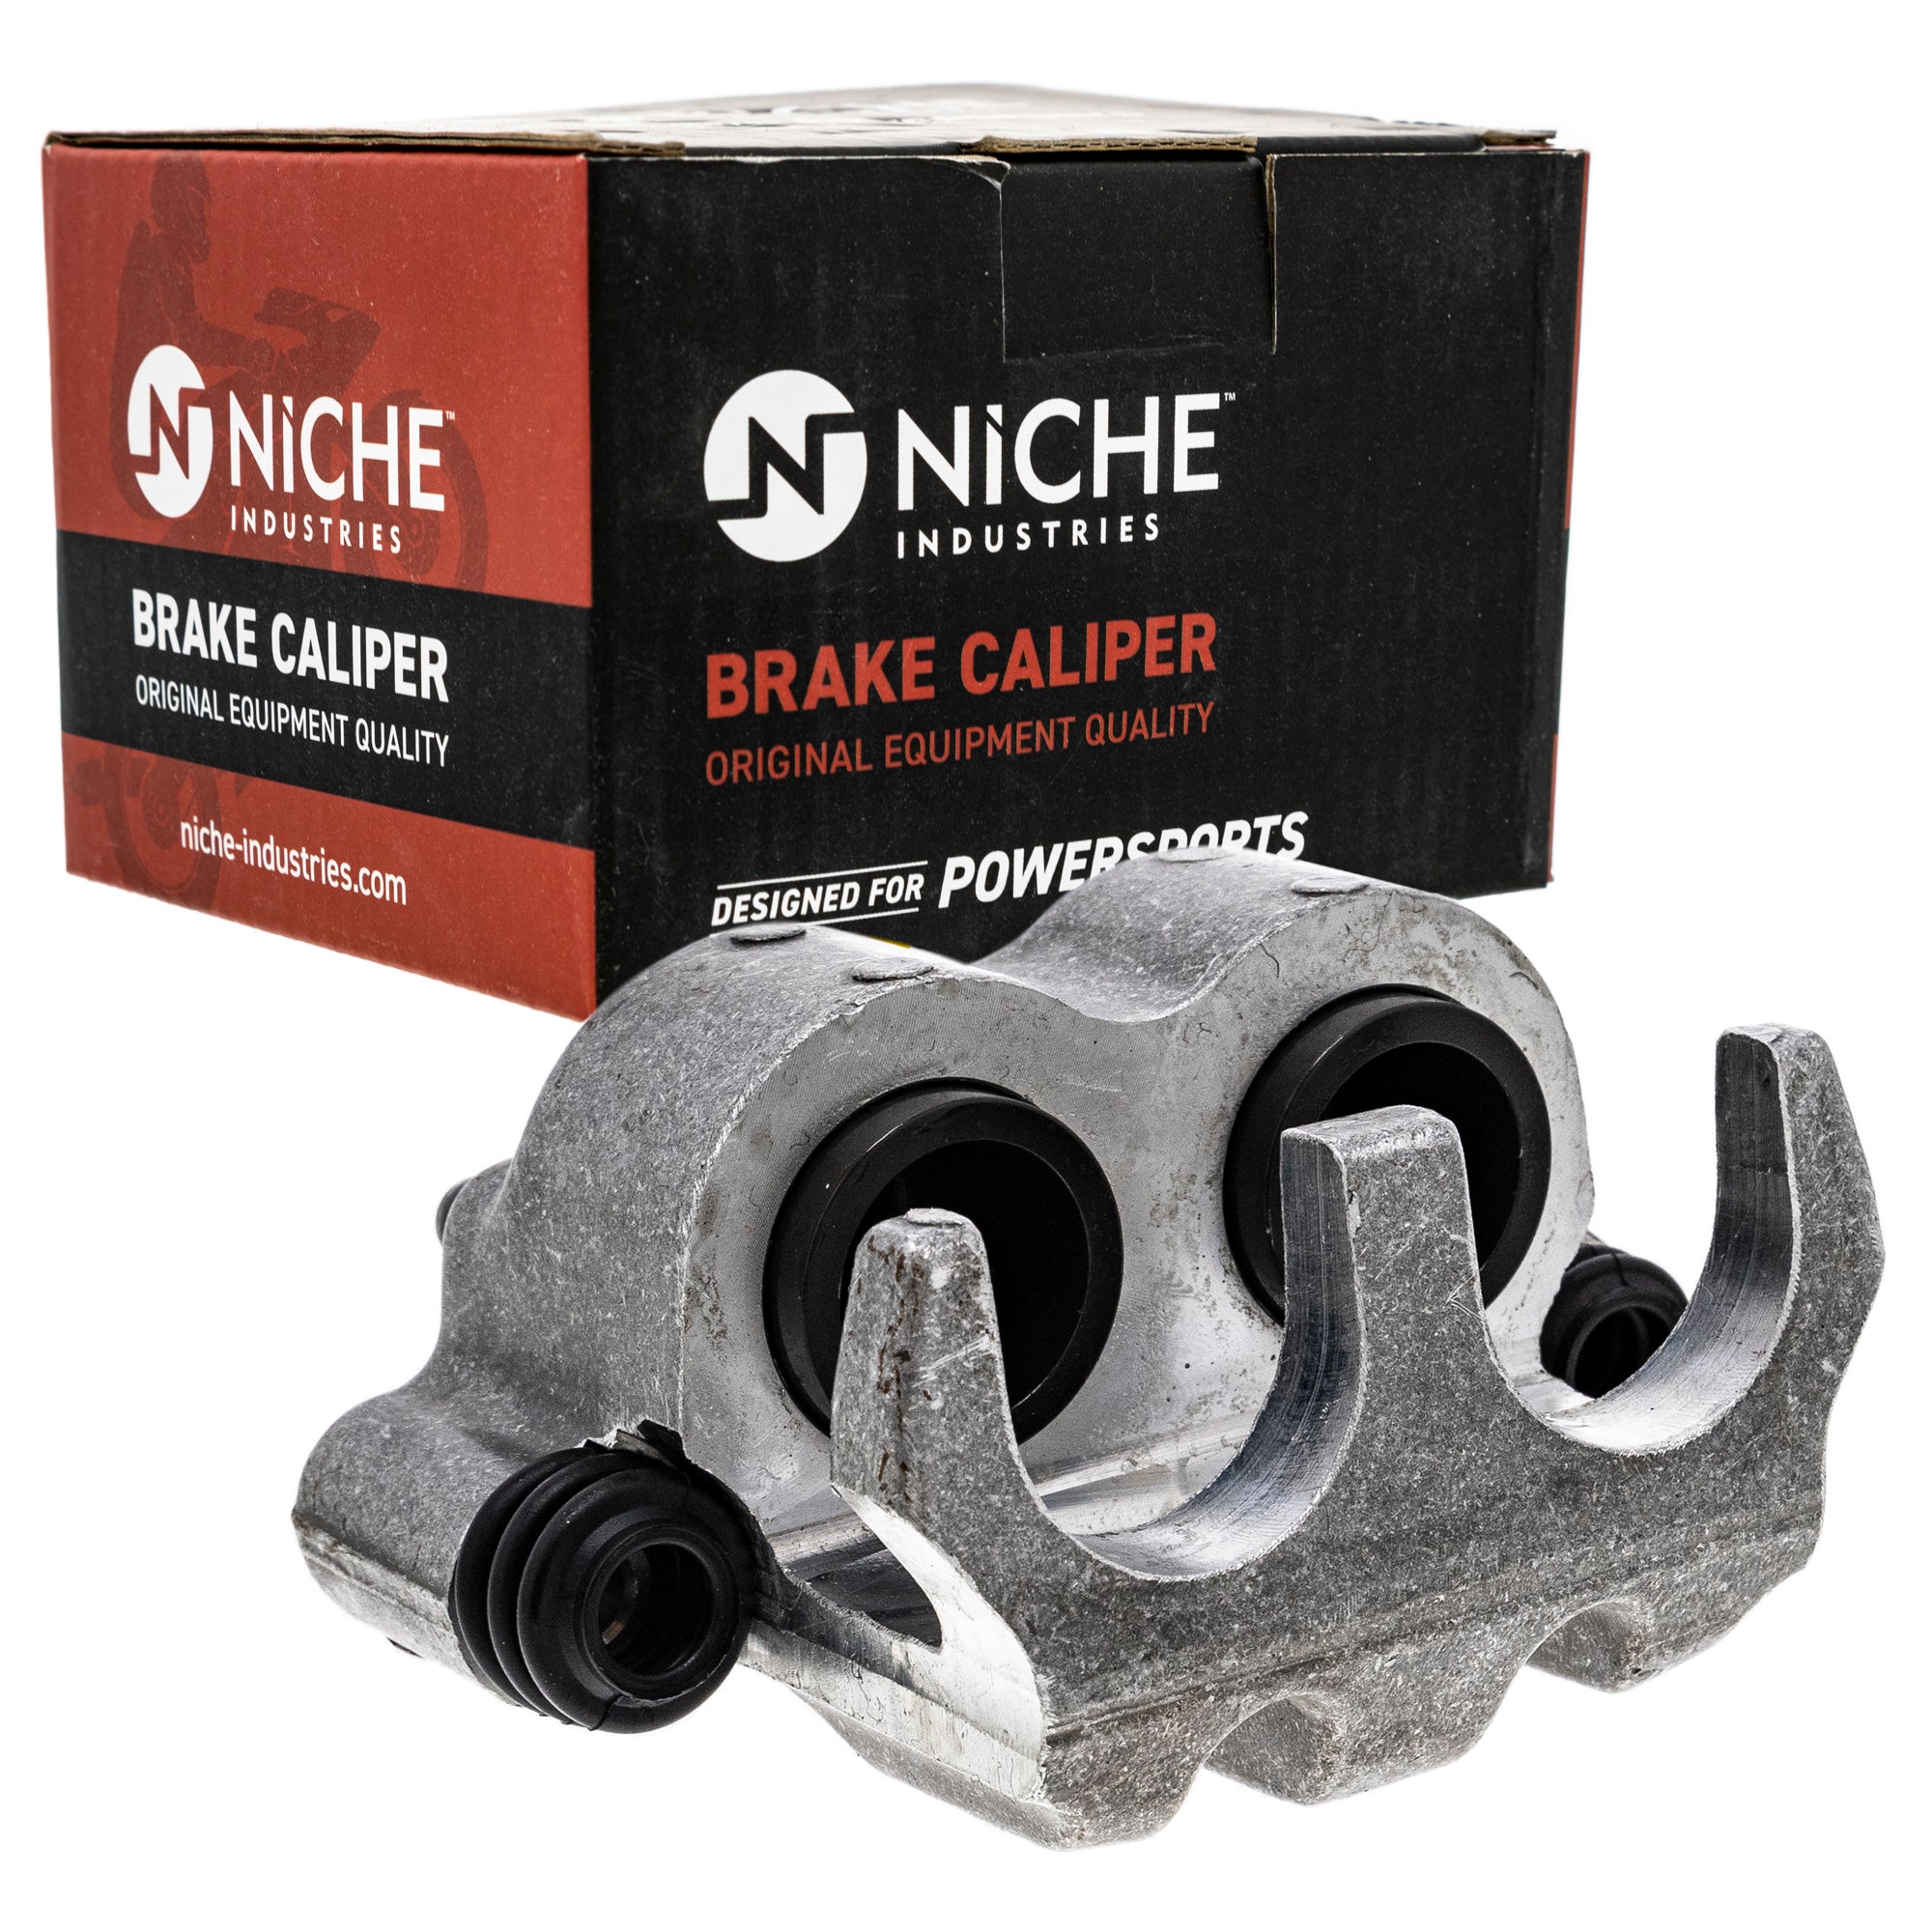 NICHE MK1001047 Brake Caliper Kit